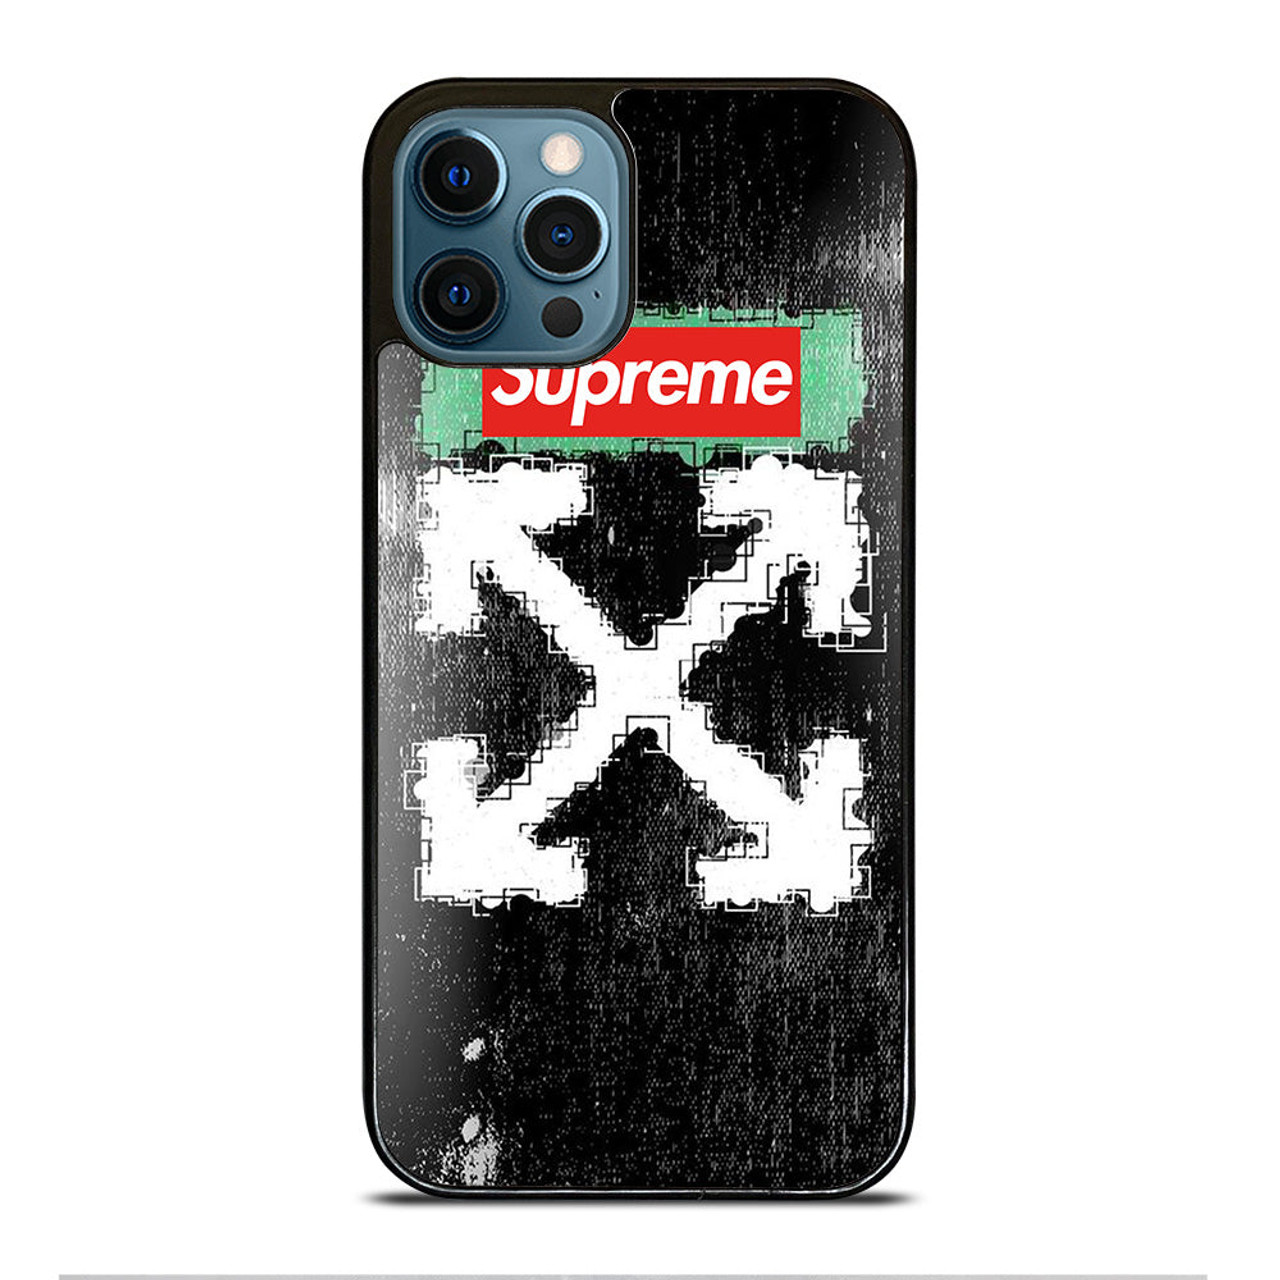 SUPREME OFF WHITE iPhone 12 Pro Max Case Cover